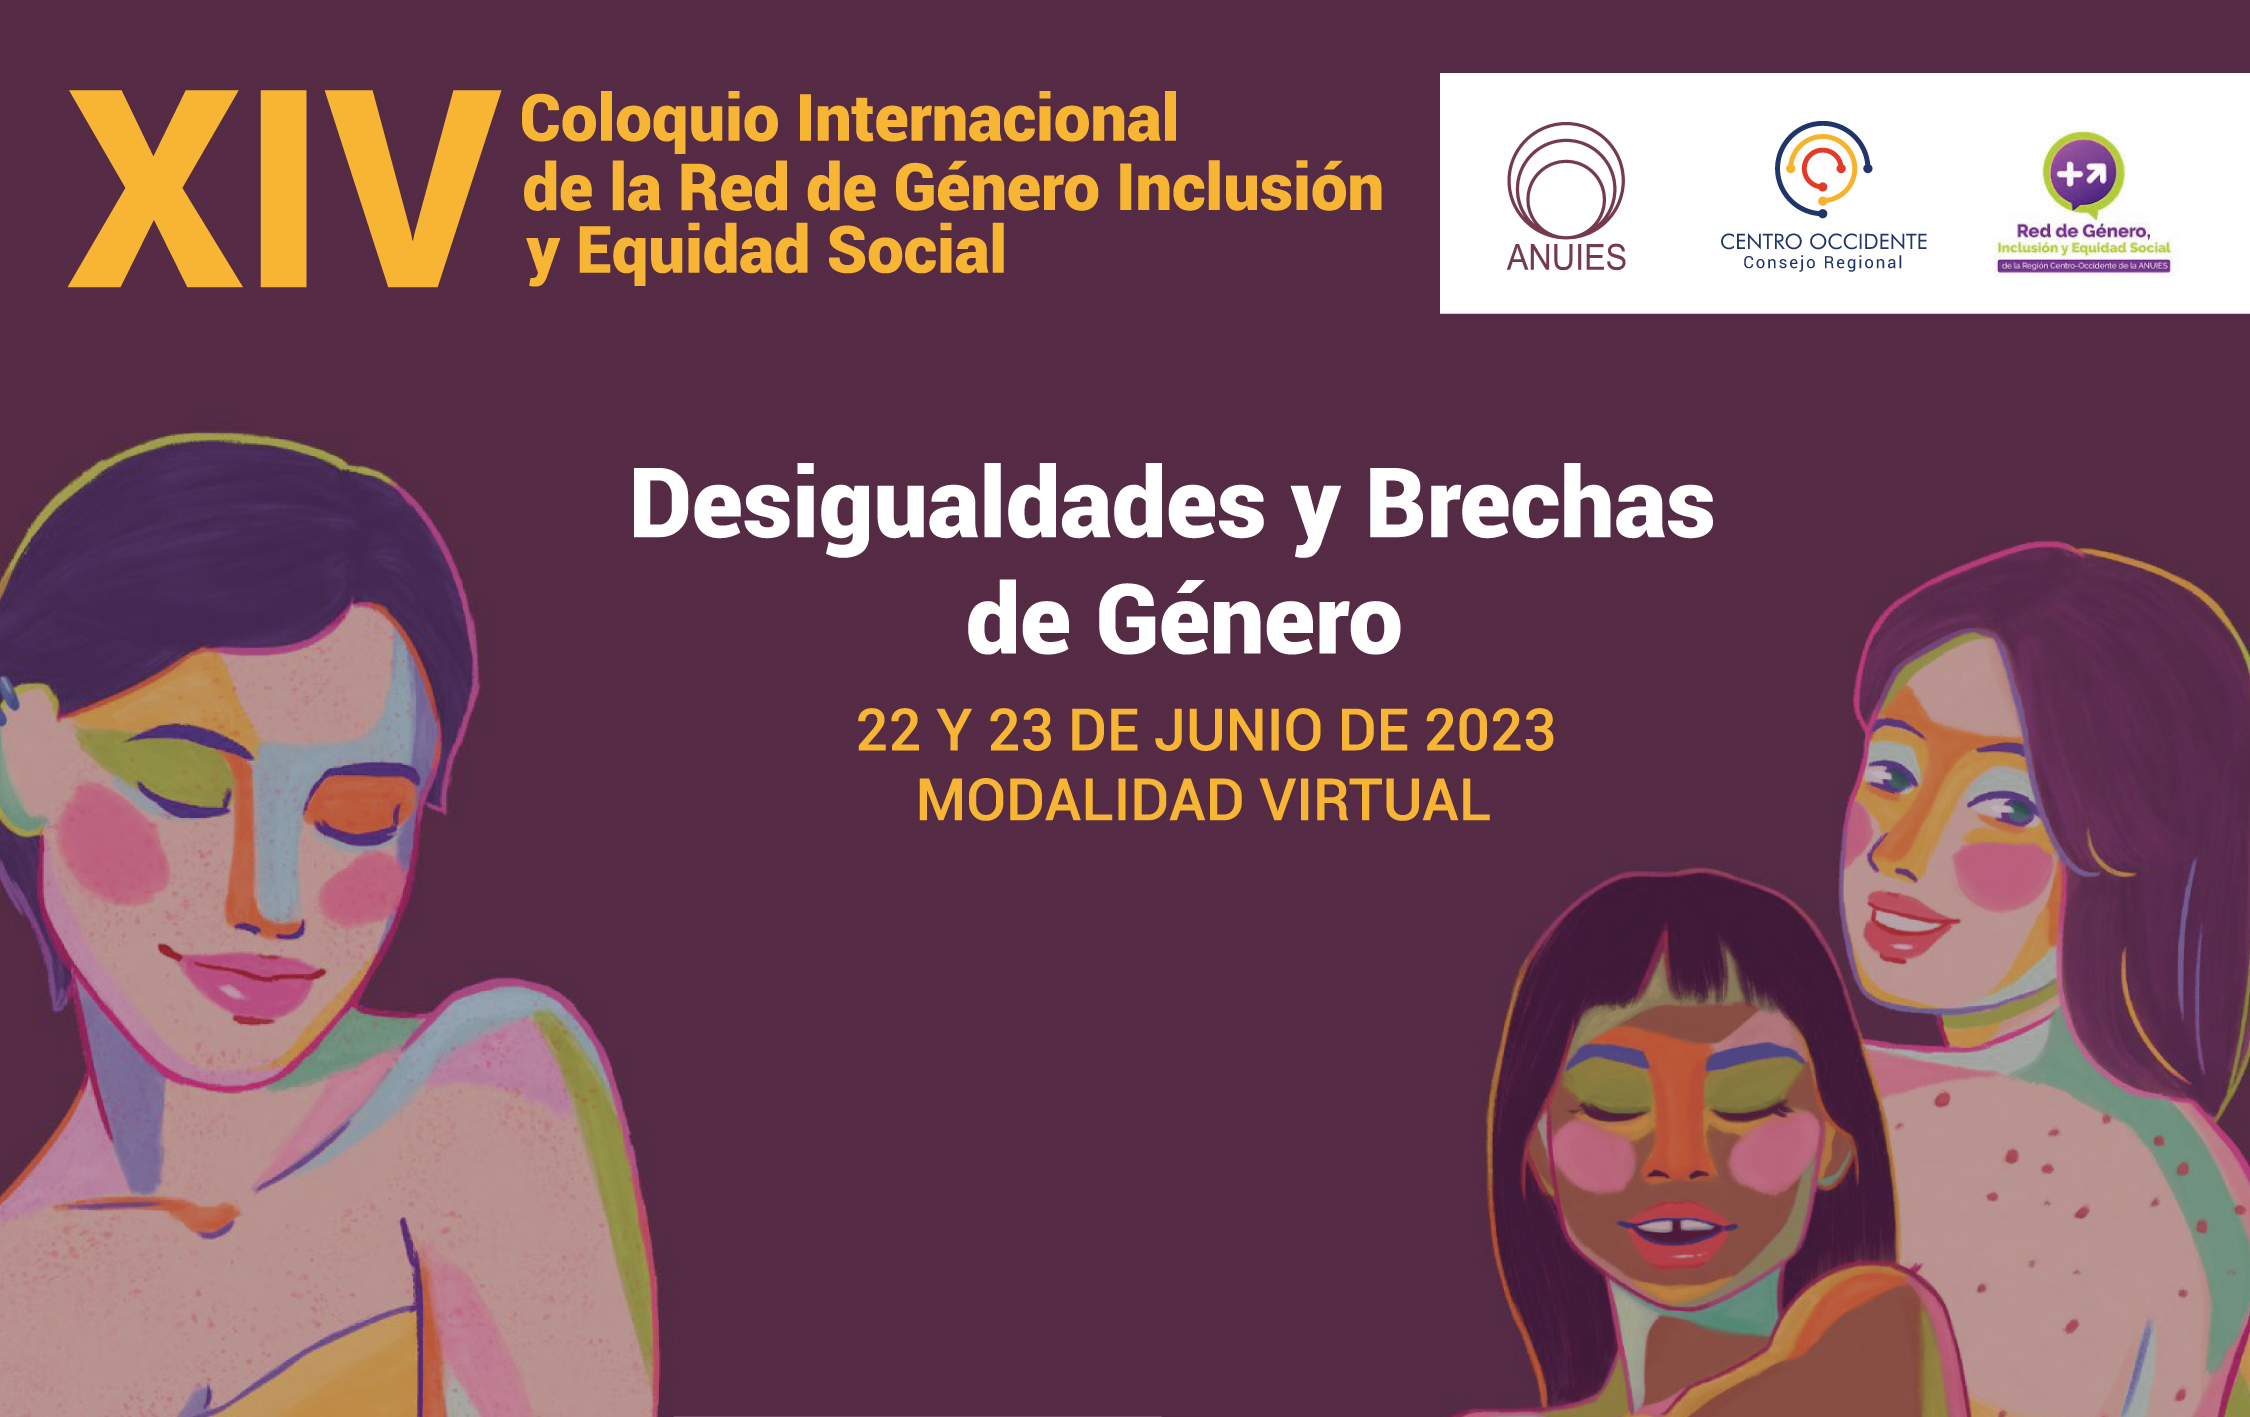 Red de Género, Inclusión y Equidad Social de la Región Centro Occidente de ANUIES prepara su Coloquio Internacional